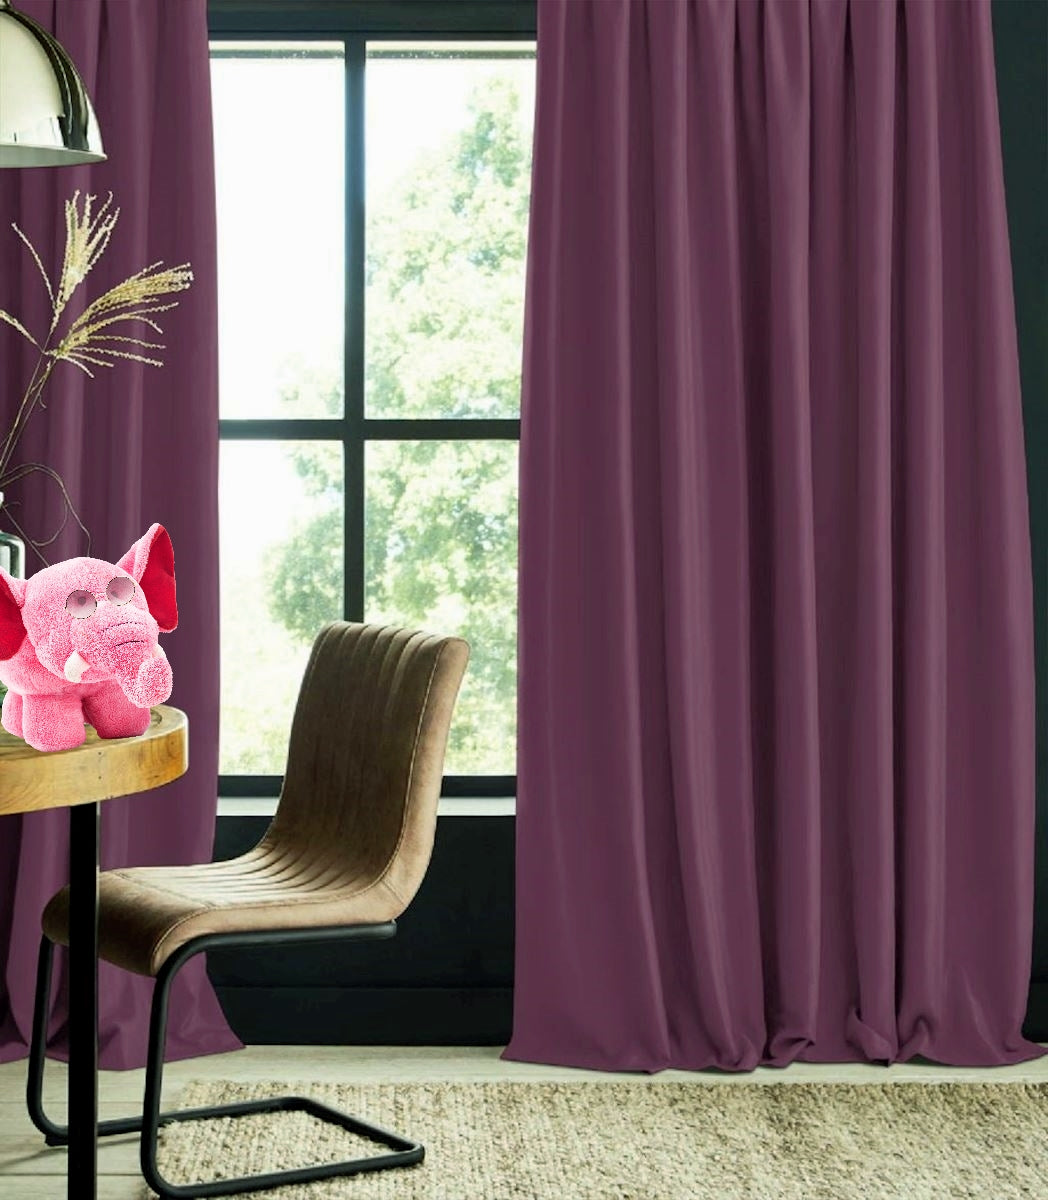 Blackout curtain violet uni blackout curtain